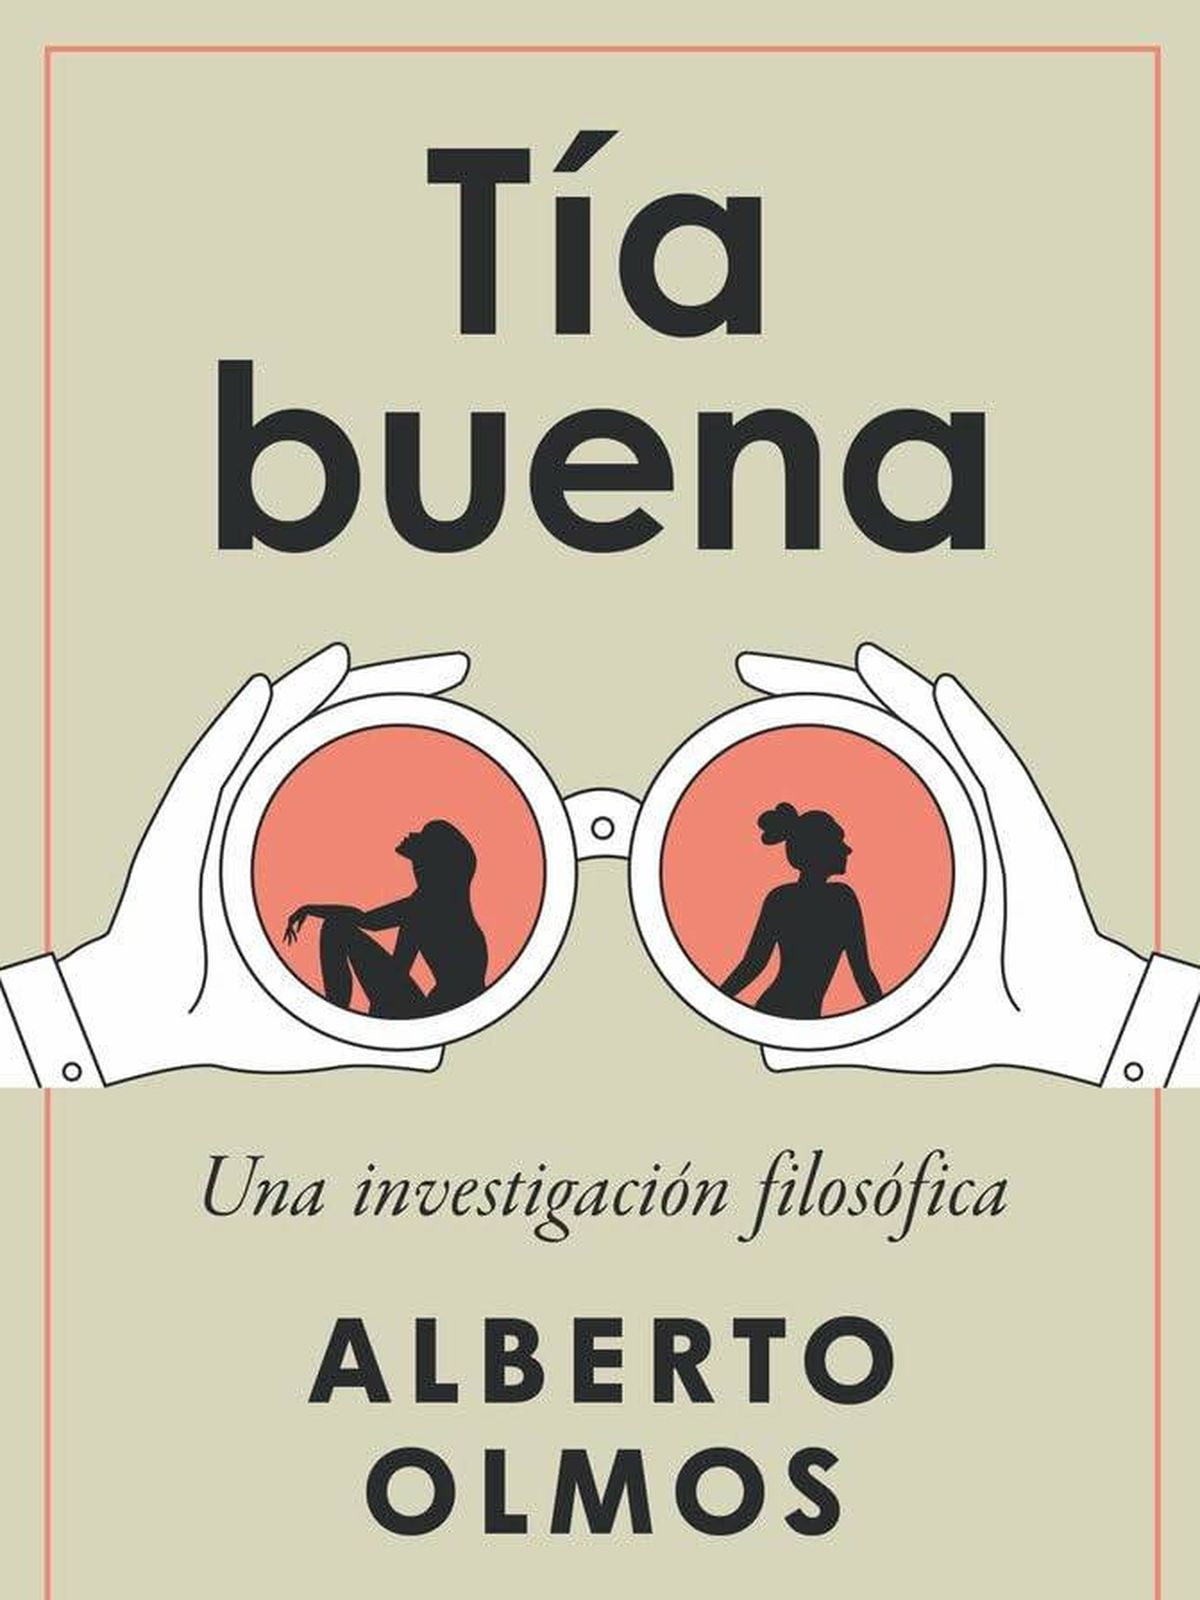 Portada de 'Tía buena', el nuevo libro de Alberto Olmos.